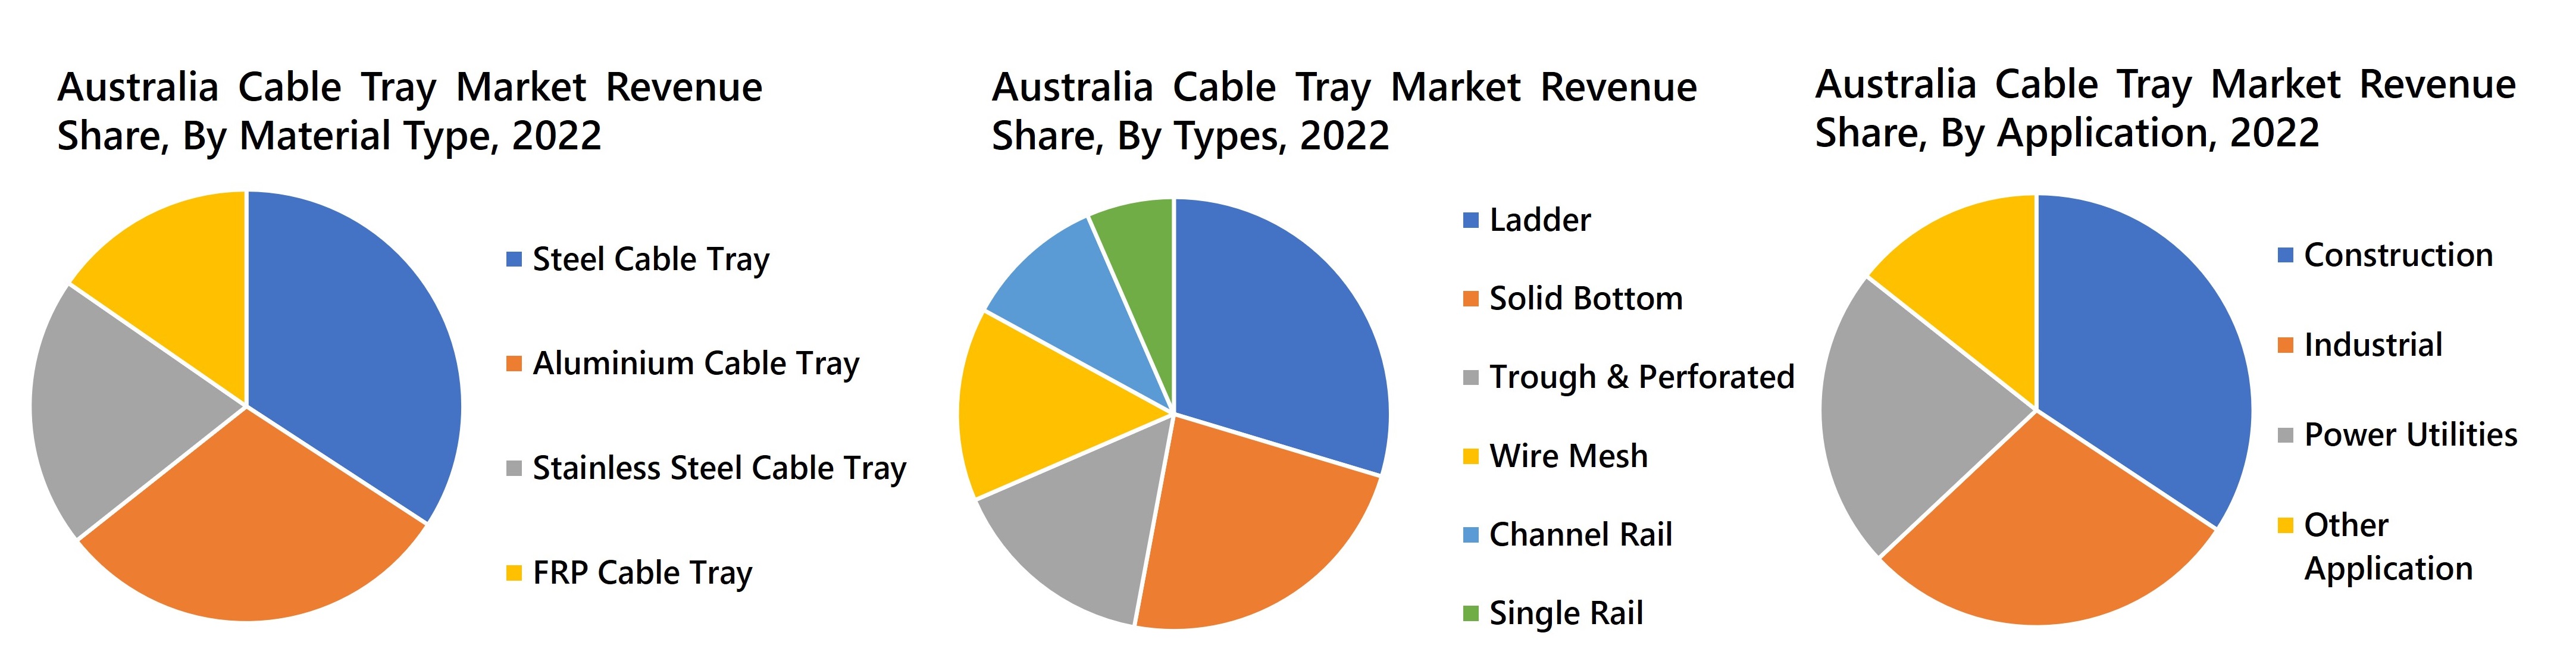 Australia Cable Tray Market Revenue Share